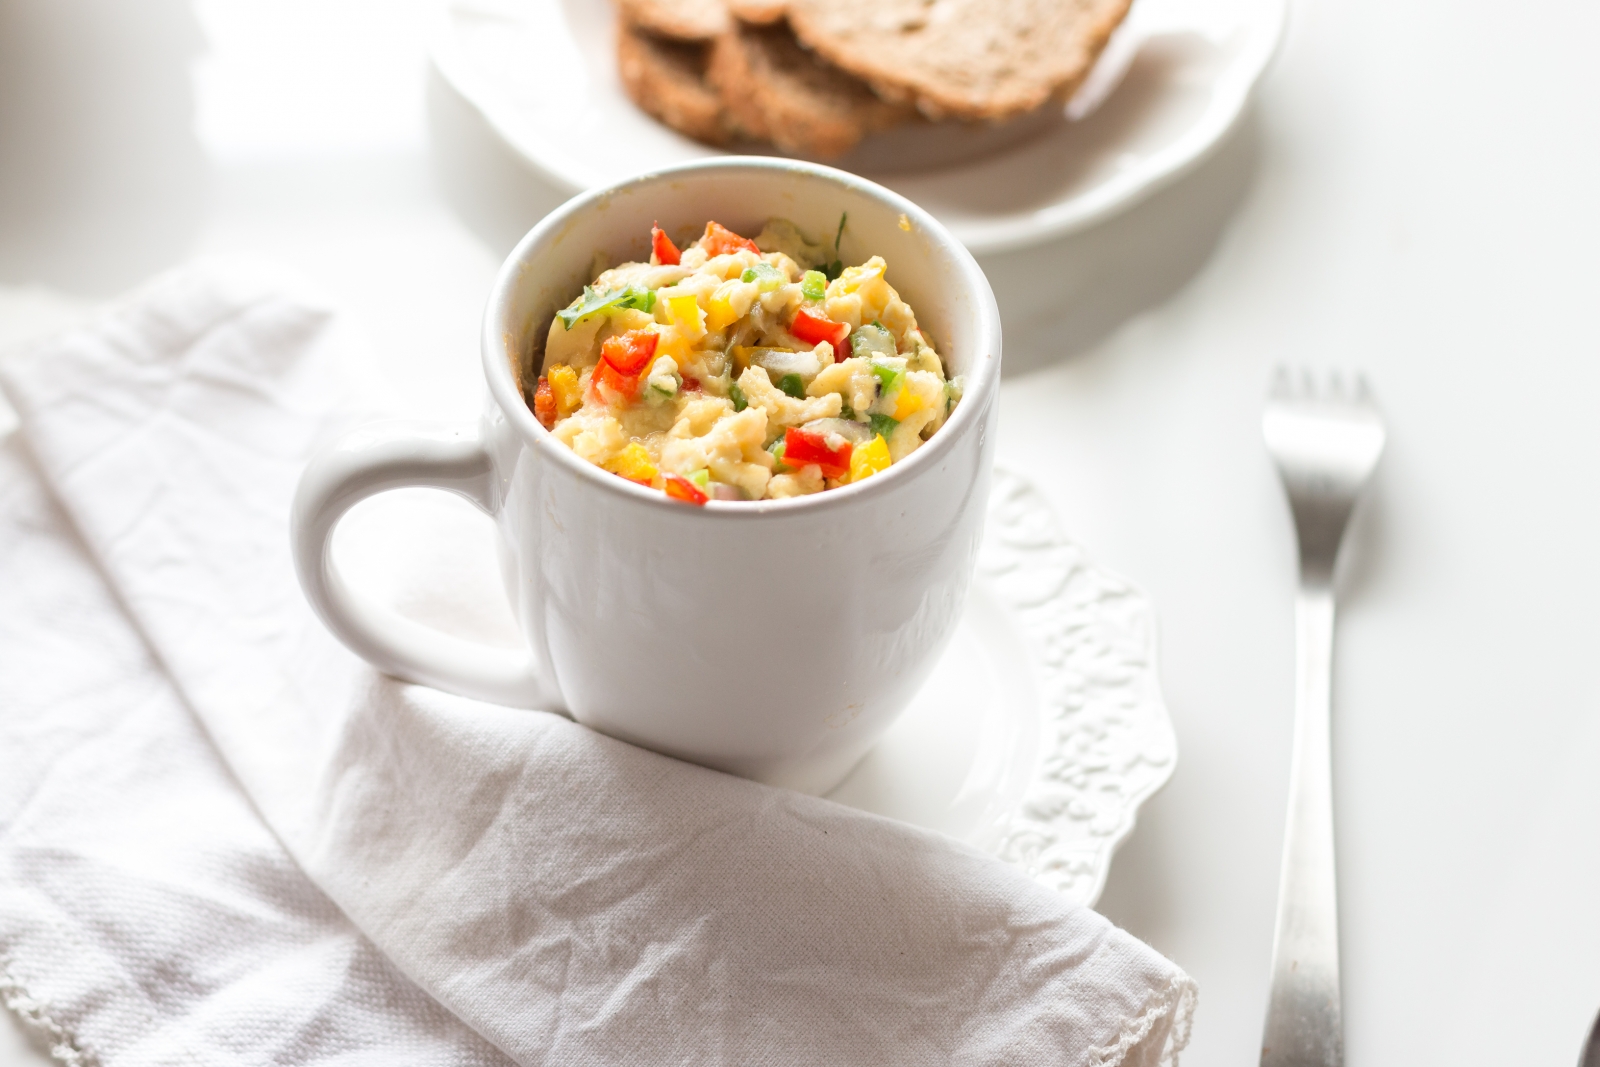 Microwaved Egg-Omelette-In-A-Mug Recipe